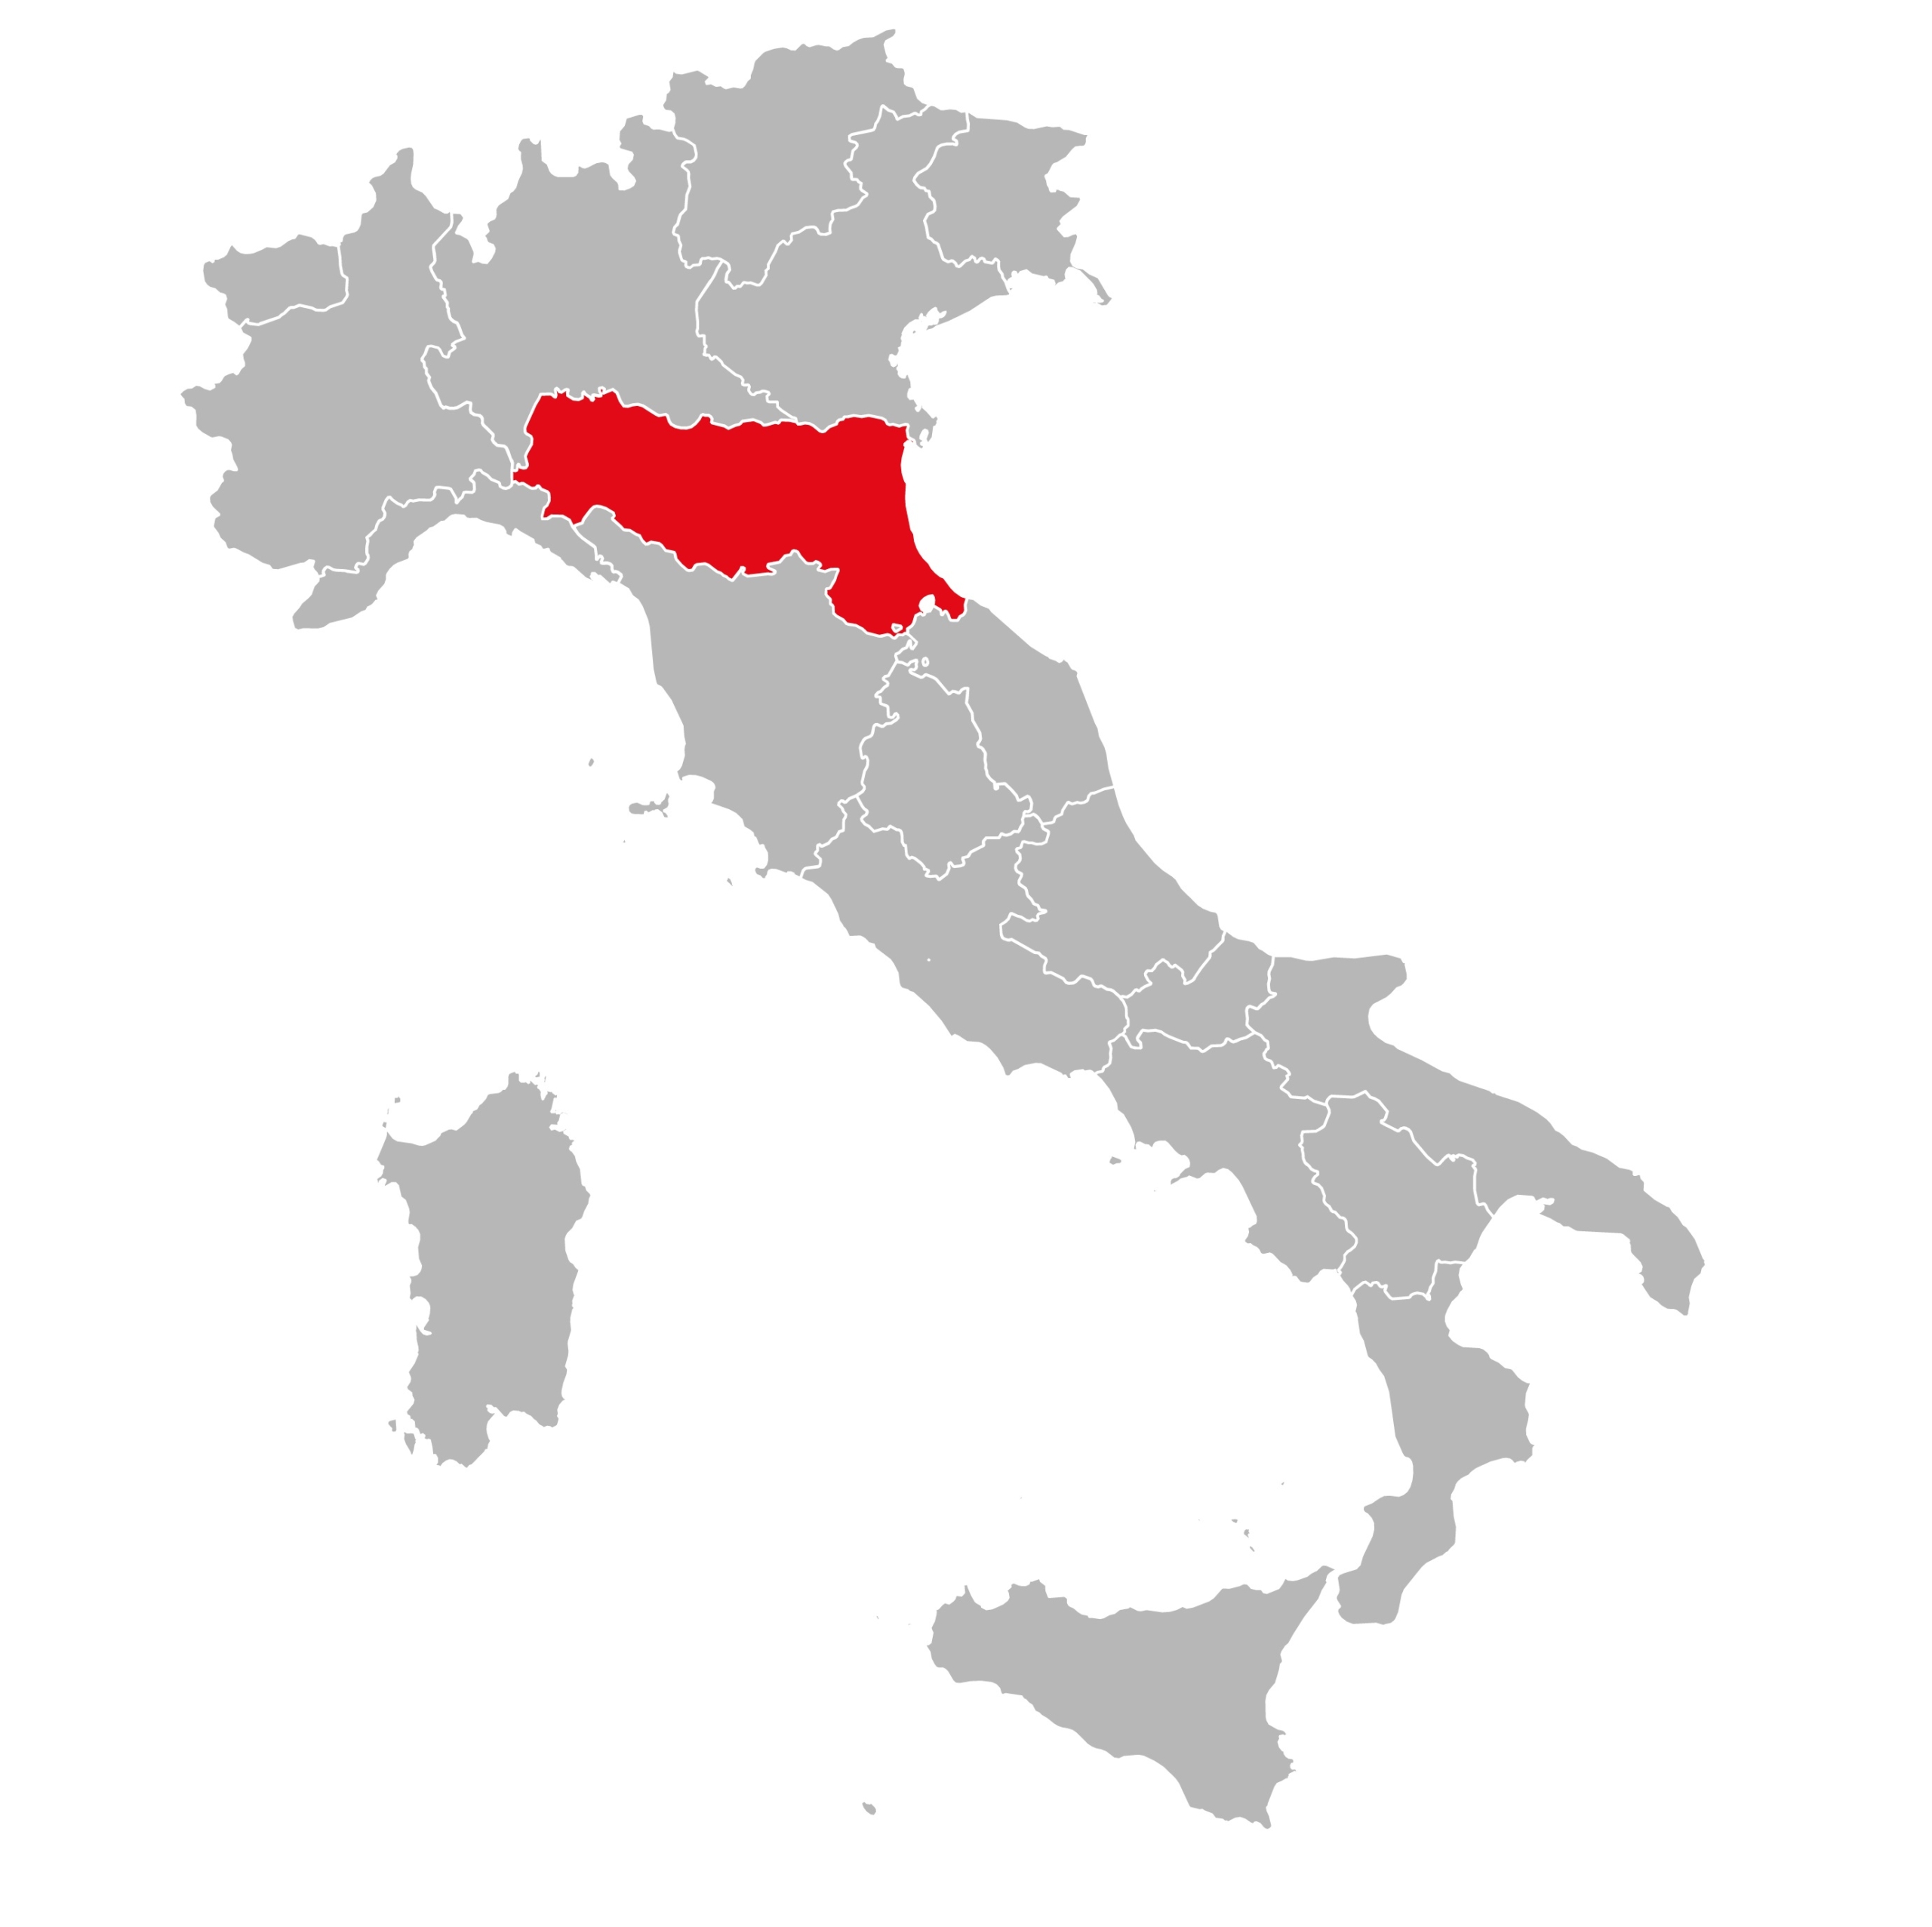 Vùng Emilia-Romagna bắt đầu phía đông nam Milan và vùng Lombardy và trải dài qua rìa phía Bắc của Tuscany, cho tới tận Biển Adriatic. (Ảnh: infinetsoft/Shutterstock)